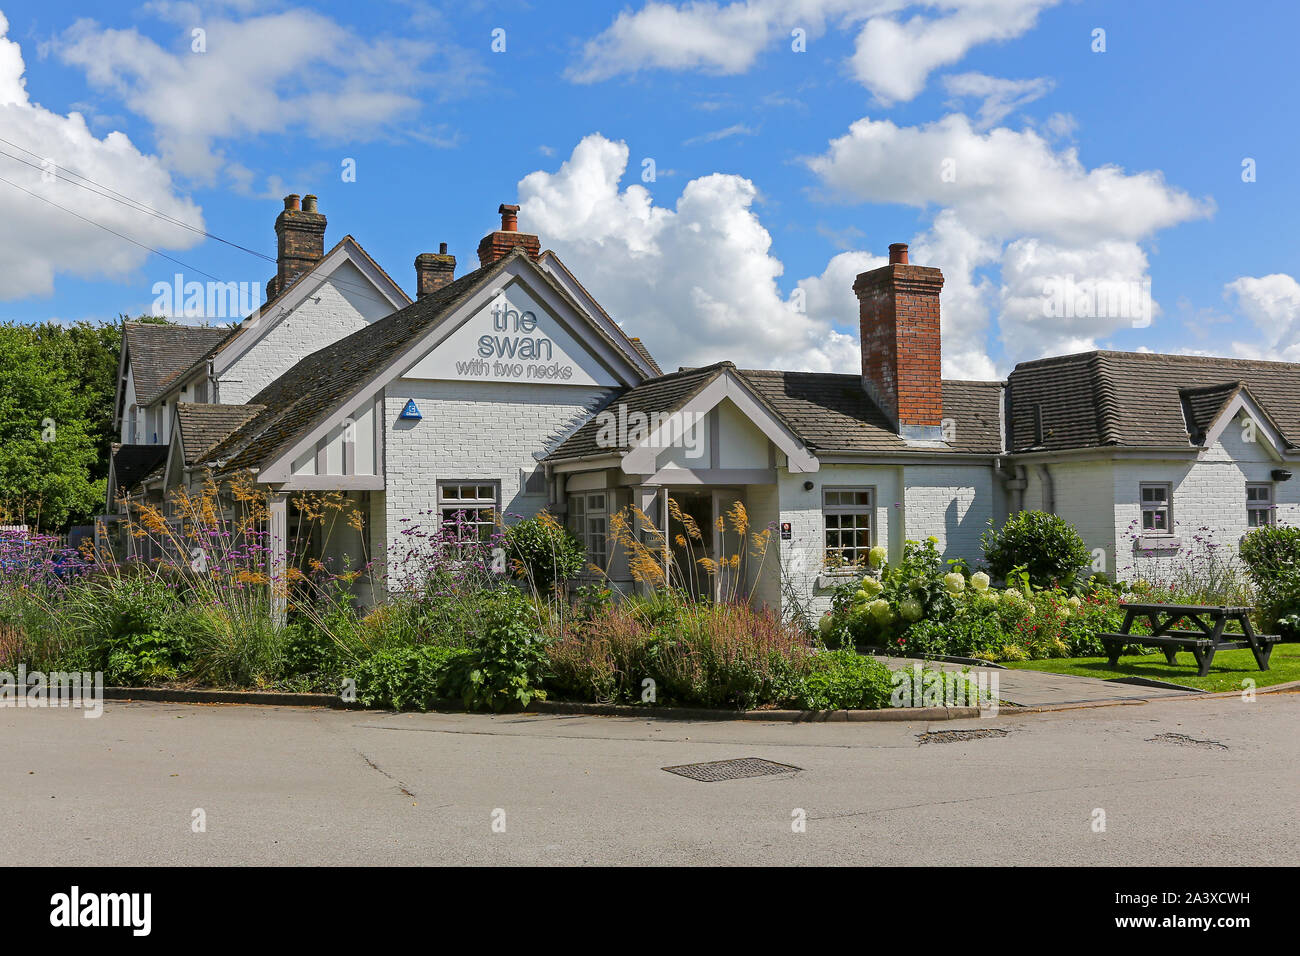 Il Cigno con due colli pub o public house, Blackbrook, Newcastle under Lyme, Staffordshire, England, Regno Unito Foto Stock